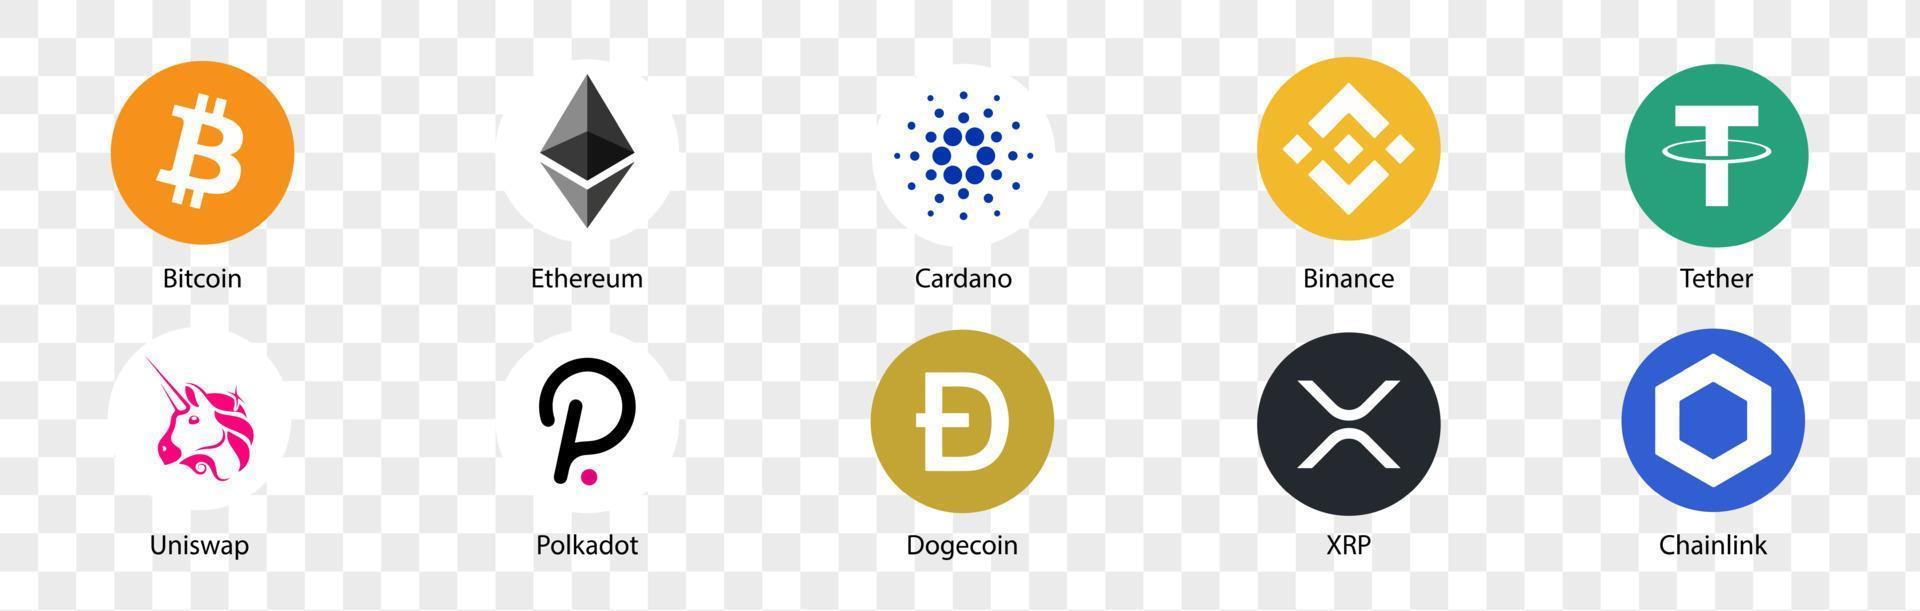 Conjunto de logotipo de criptomoeda. conjunto de ícones de criptomoeda. bitcoin, ethereum, cardano, binance, tether, uniswap, polkadot, dogecoin, xrp, chainlink. ilustrações vetoriais. vetor